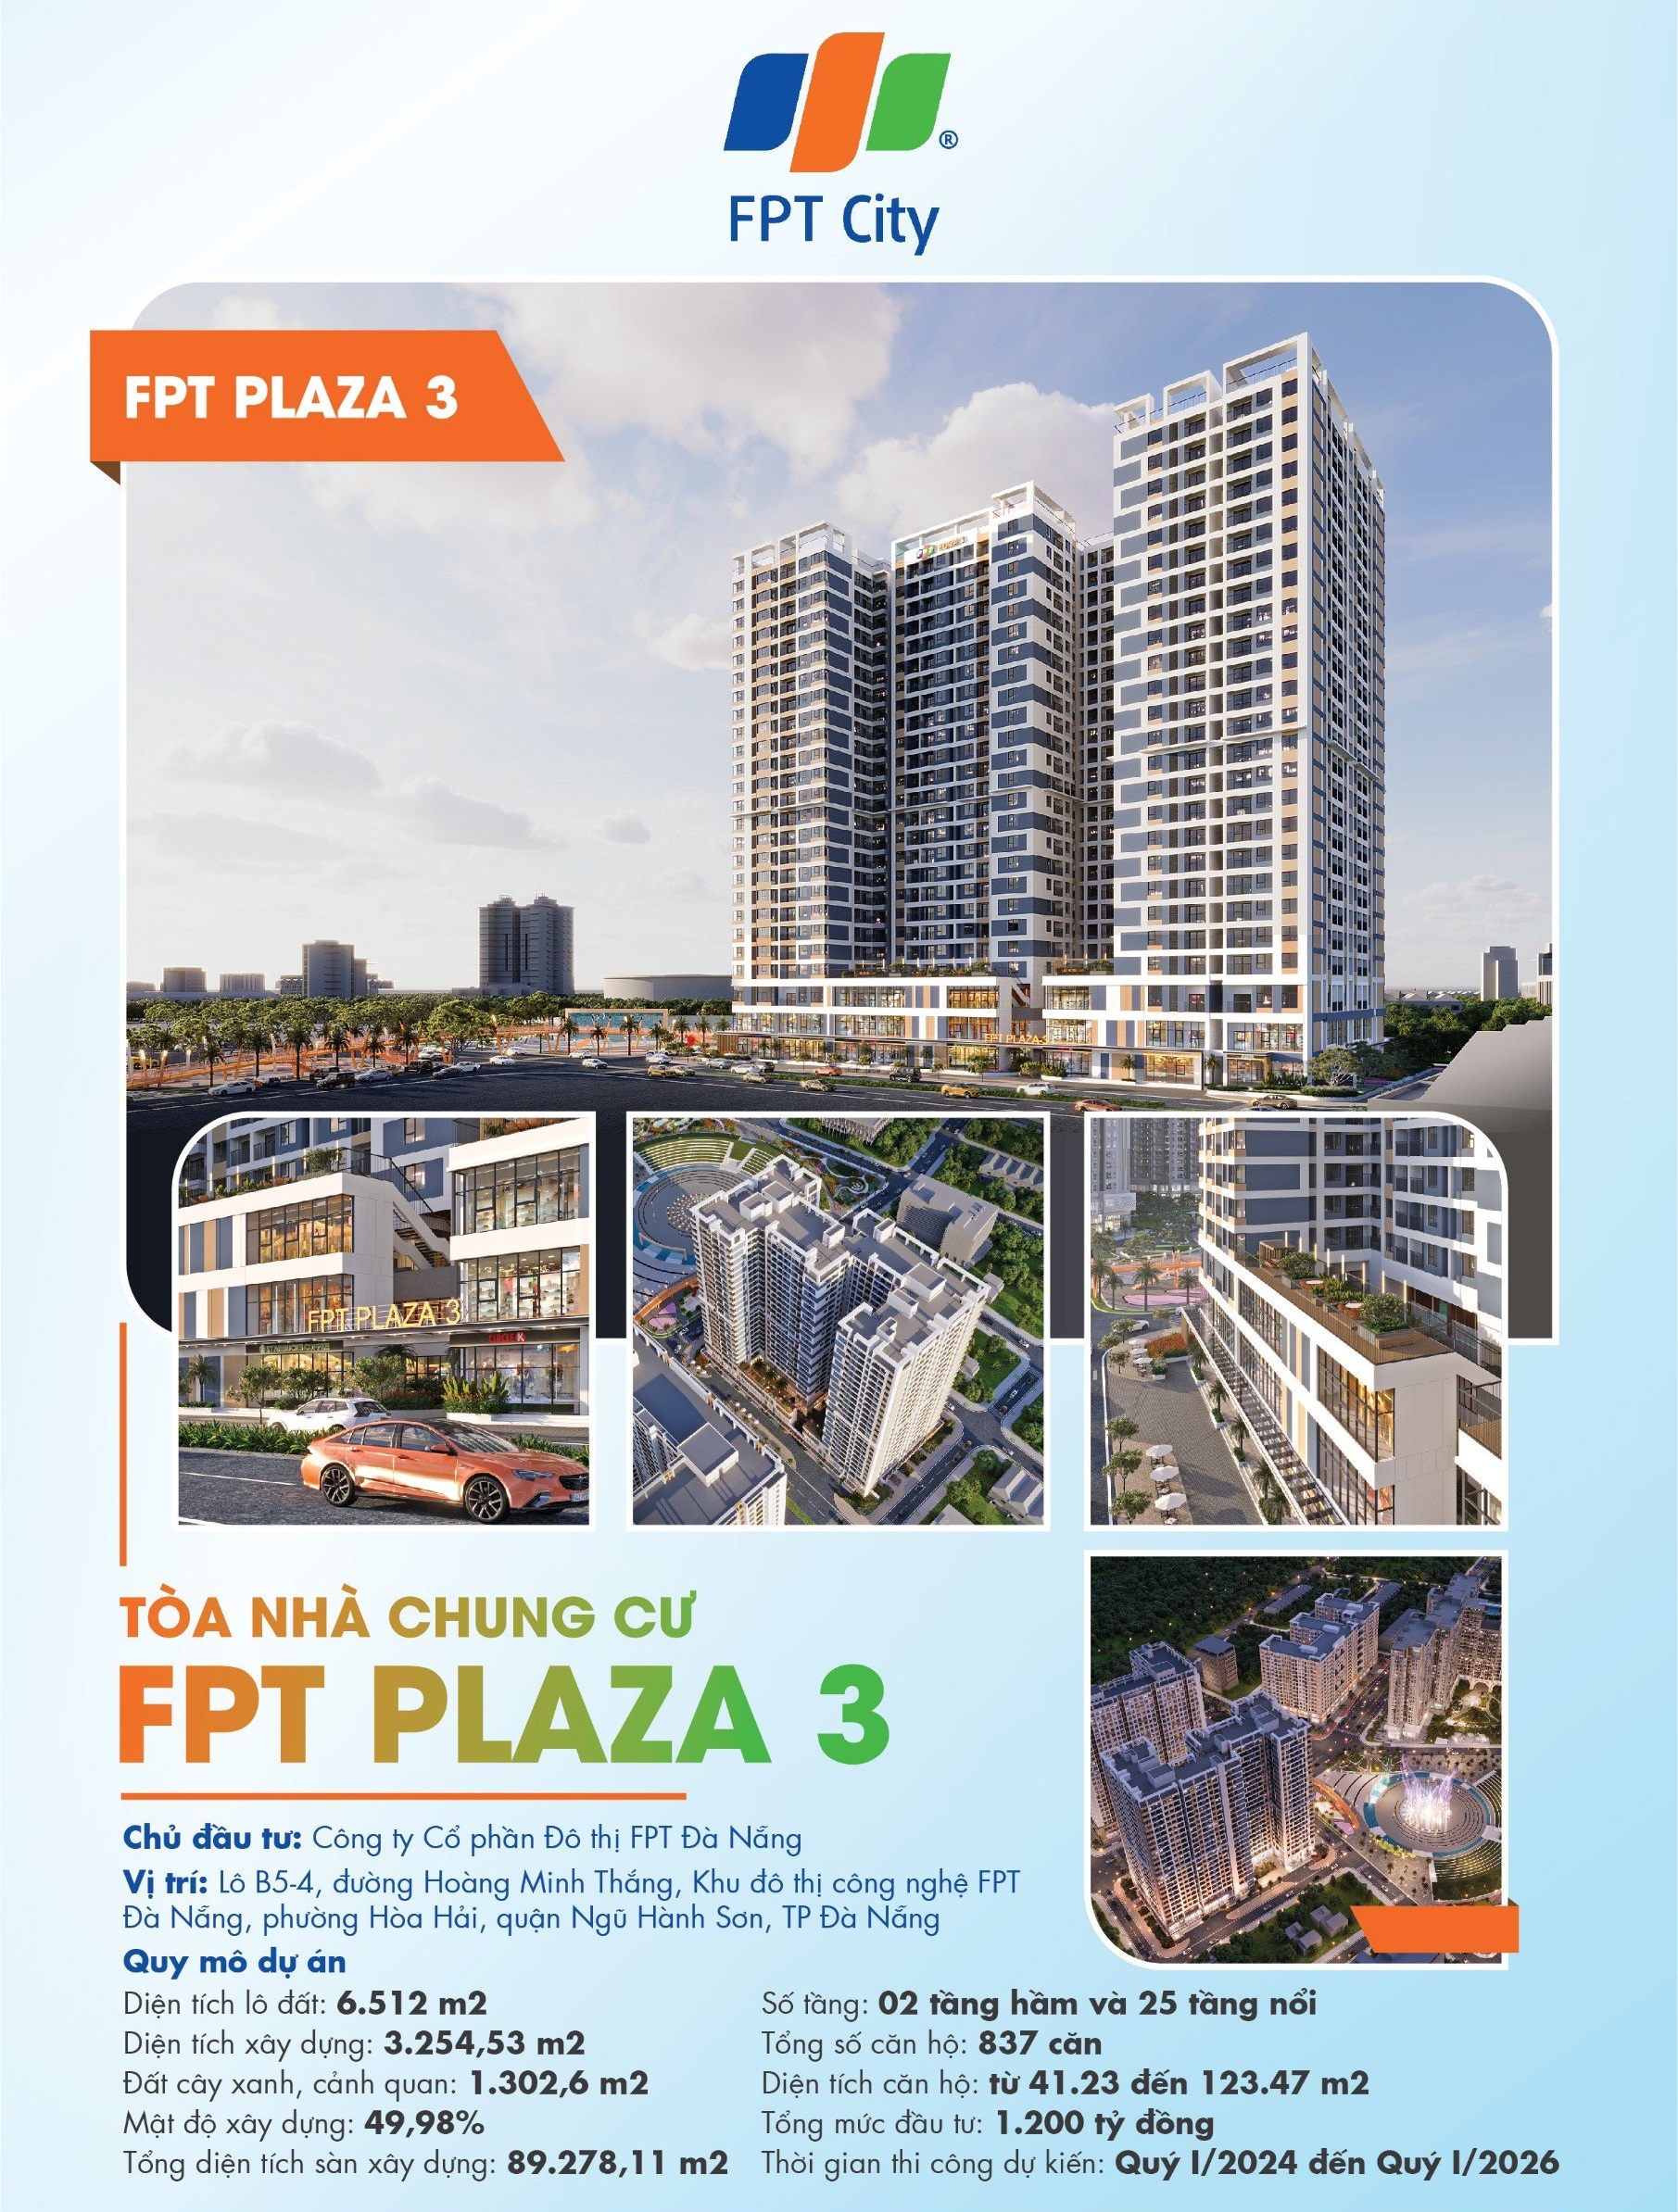 Thông tin FPT Plaza 3